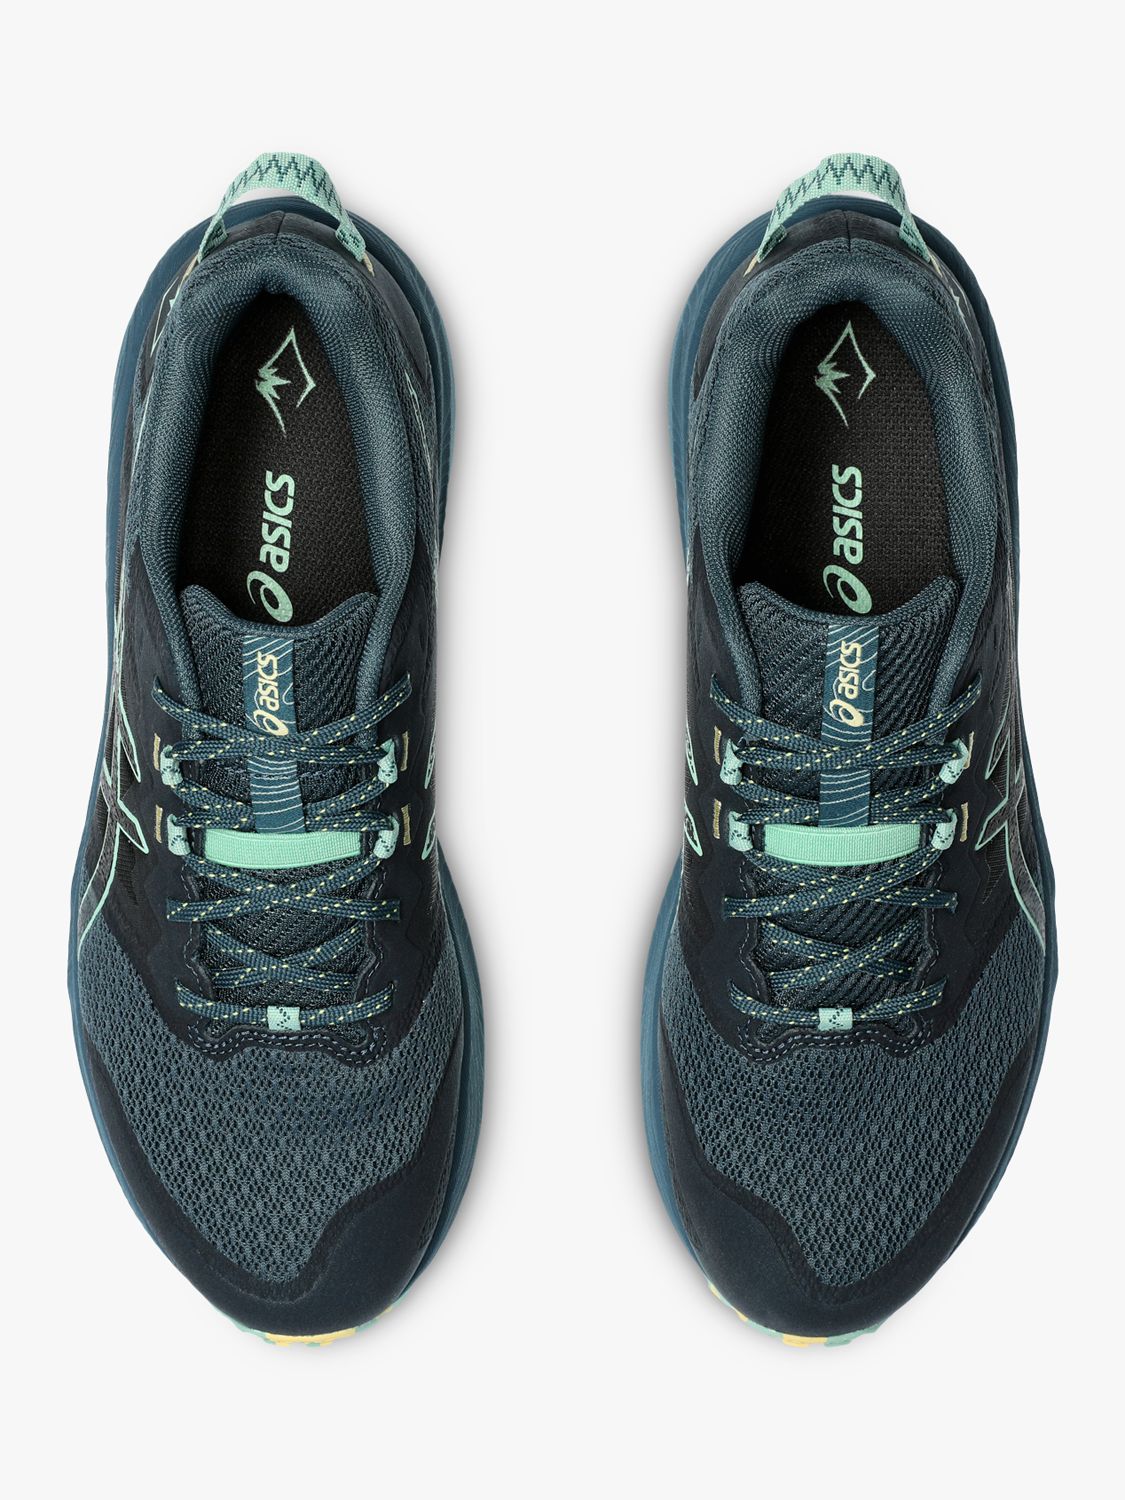 ASICS GEL-TRABUCO™ TERRA 2 Men's Running Shoes, Blue/Dark Mint, 8